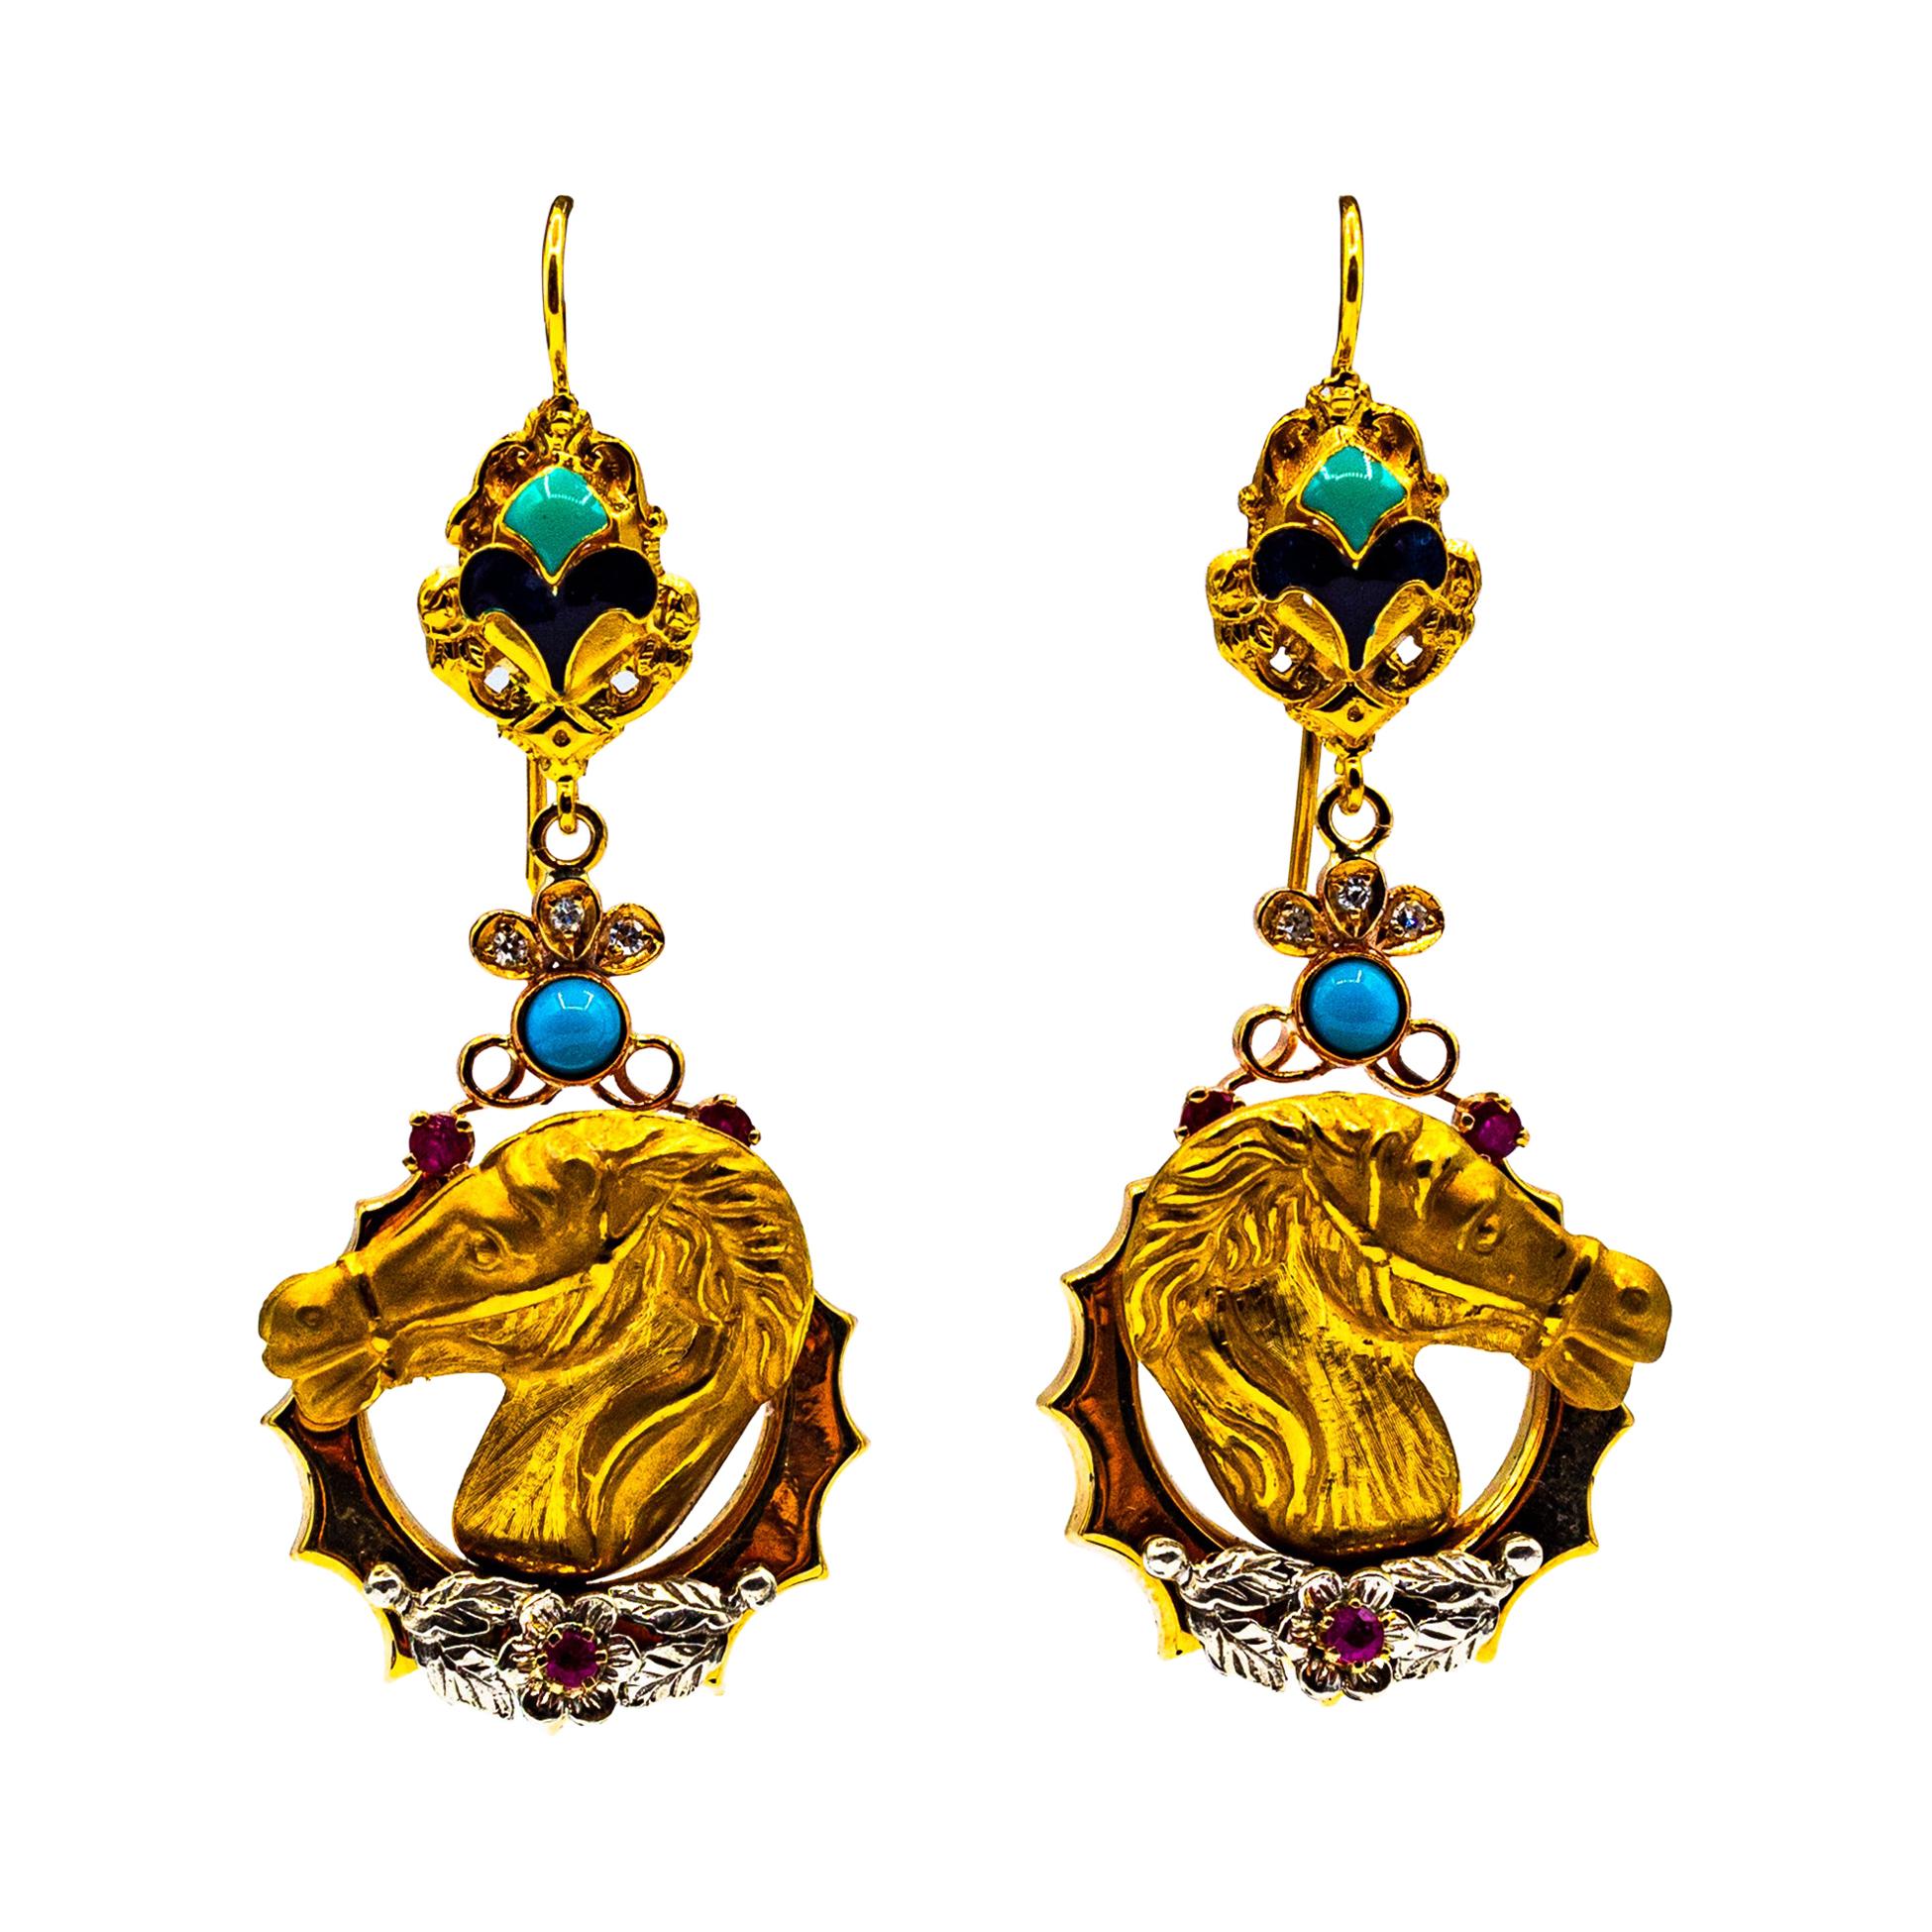 Clous d'oreilles de style Art Nouveau en or jaune avec diamants blancs, rubis, émail et turquoises